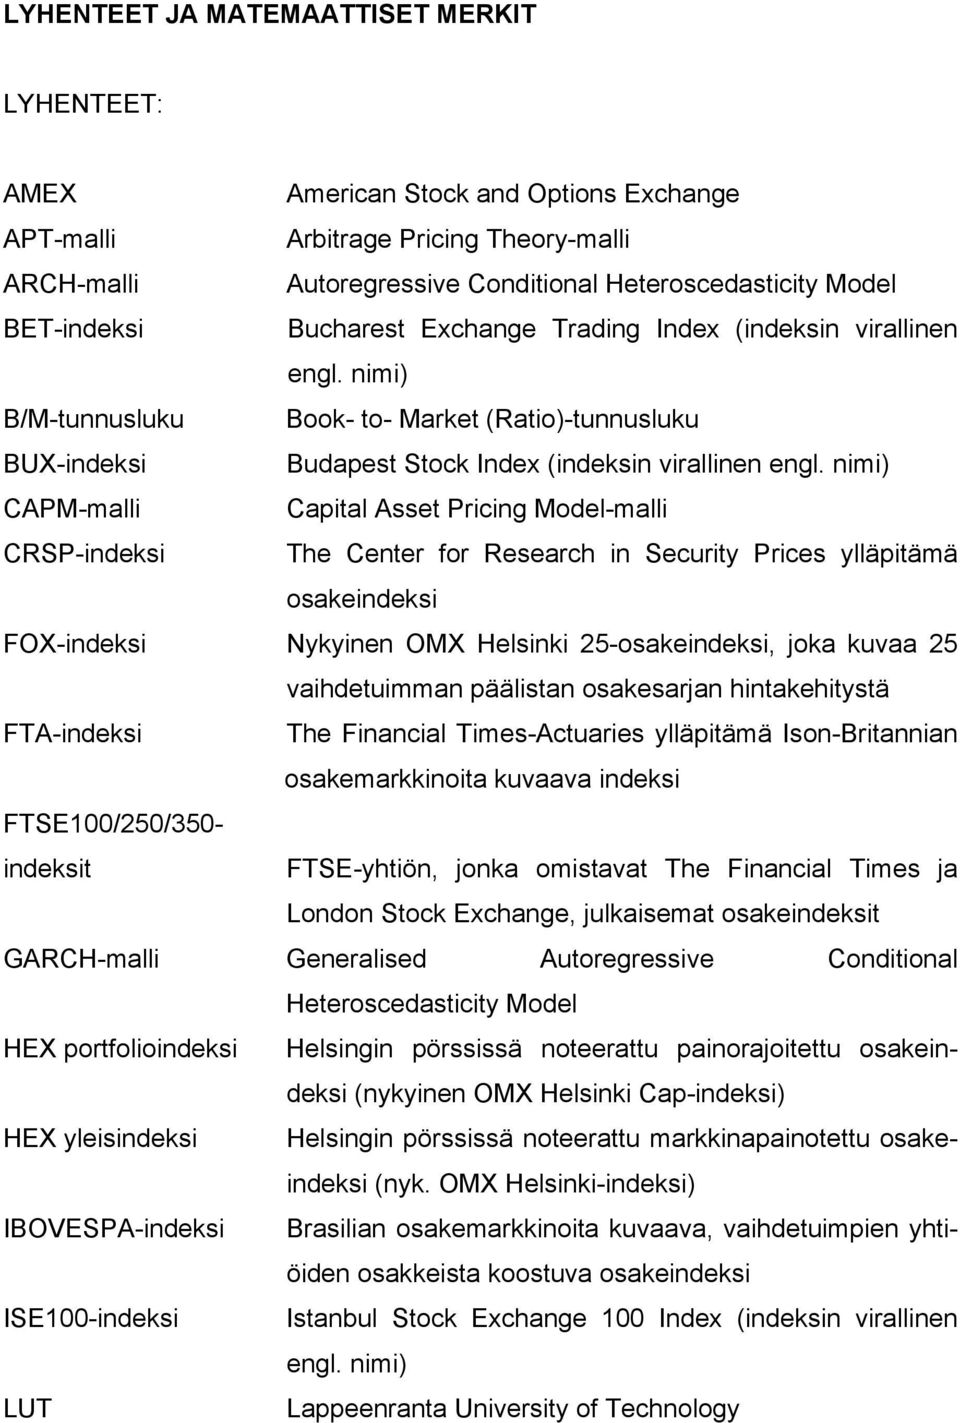 nimi) CAPM-malli Capital Asset Pricing Model-malli CRSP-indeksi The Center for Research in Security Prices ylläpitämä osakeindeksi FOX-indeksi Nykyinen OMX Helsinki 25-osakeindeksi, joka kuvaa 25